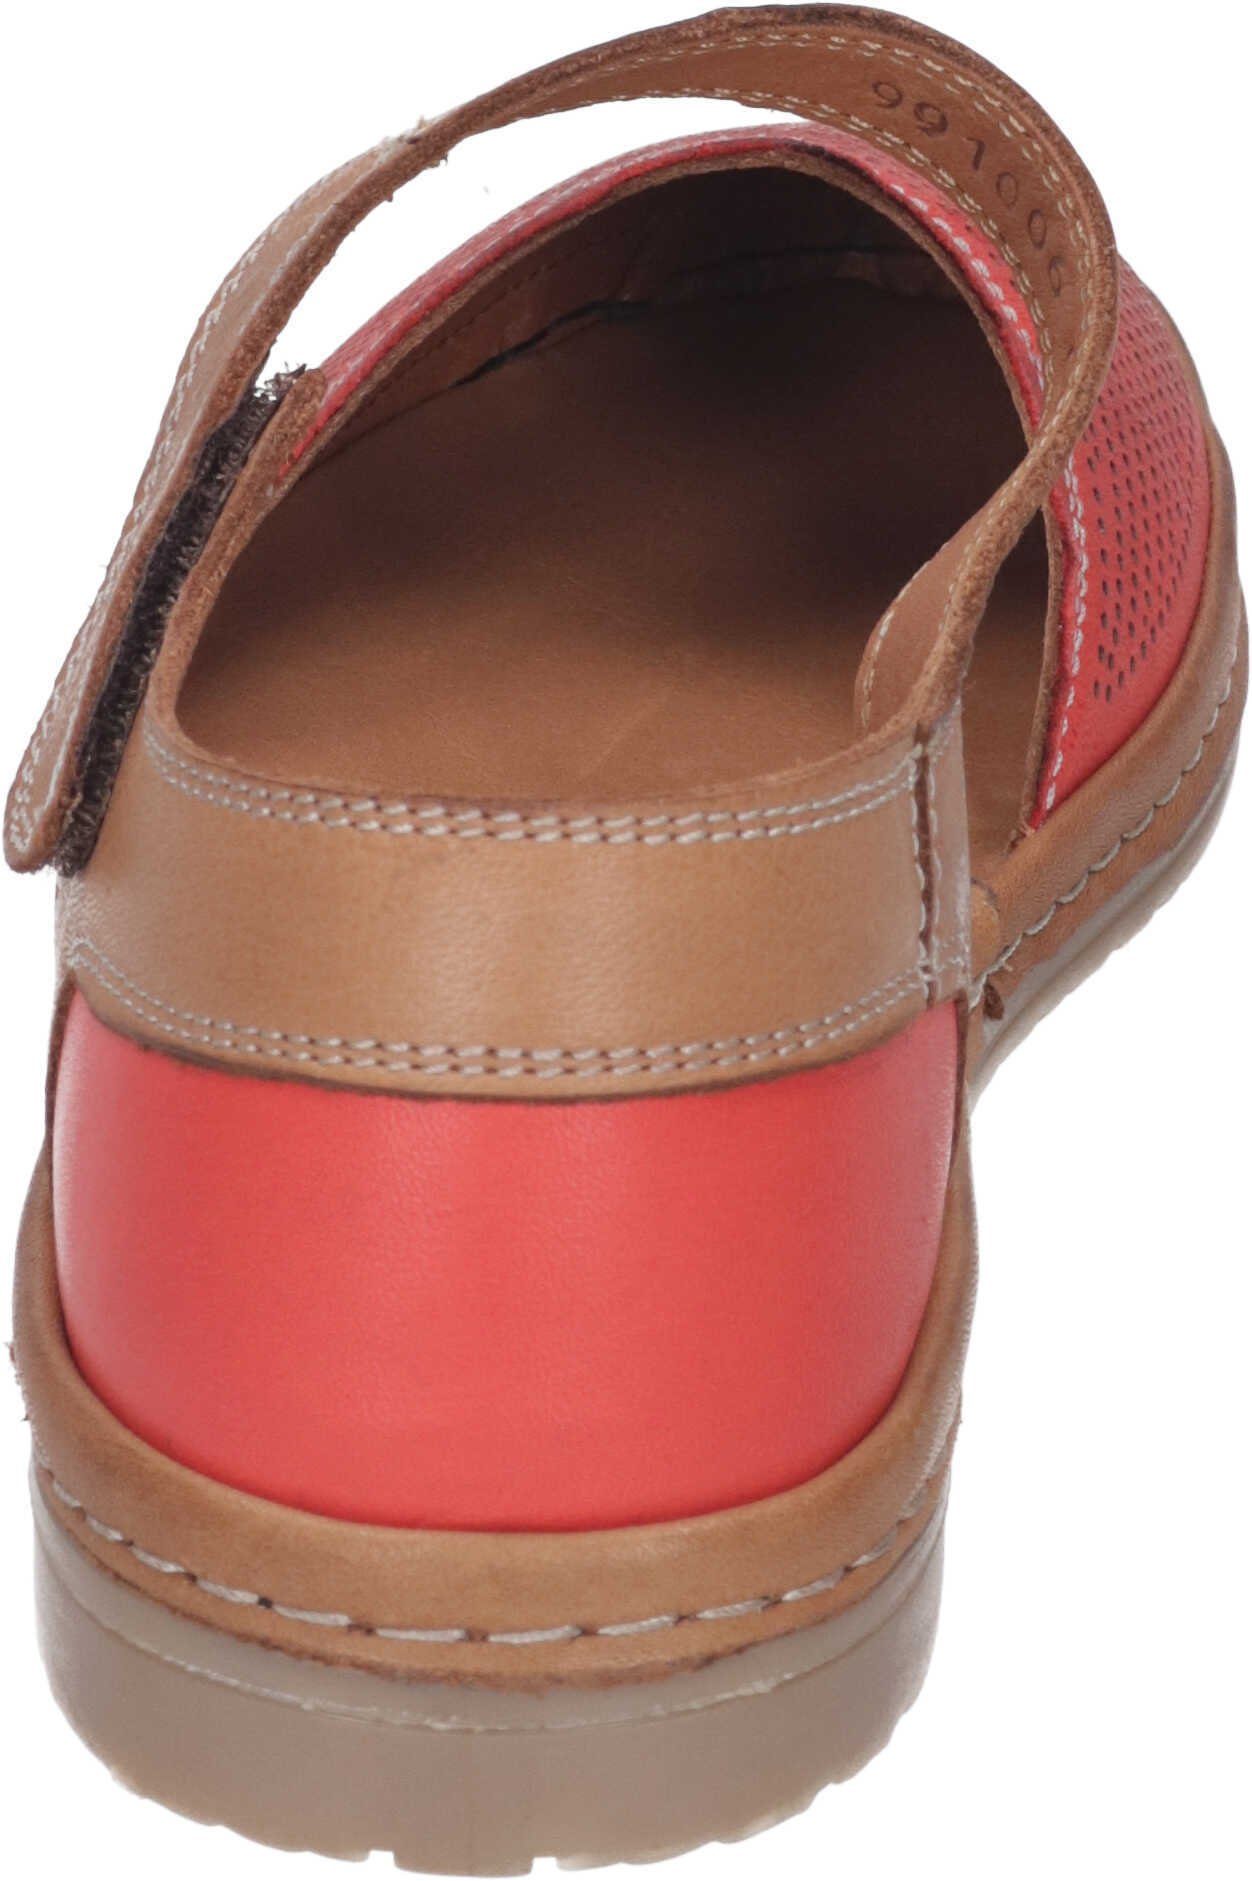 Manitu aus Sandalen echtem rot Leder Sandalette